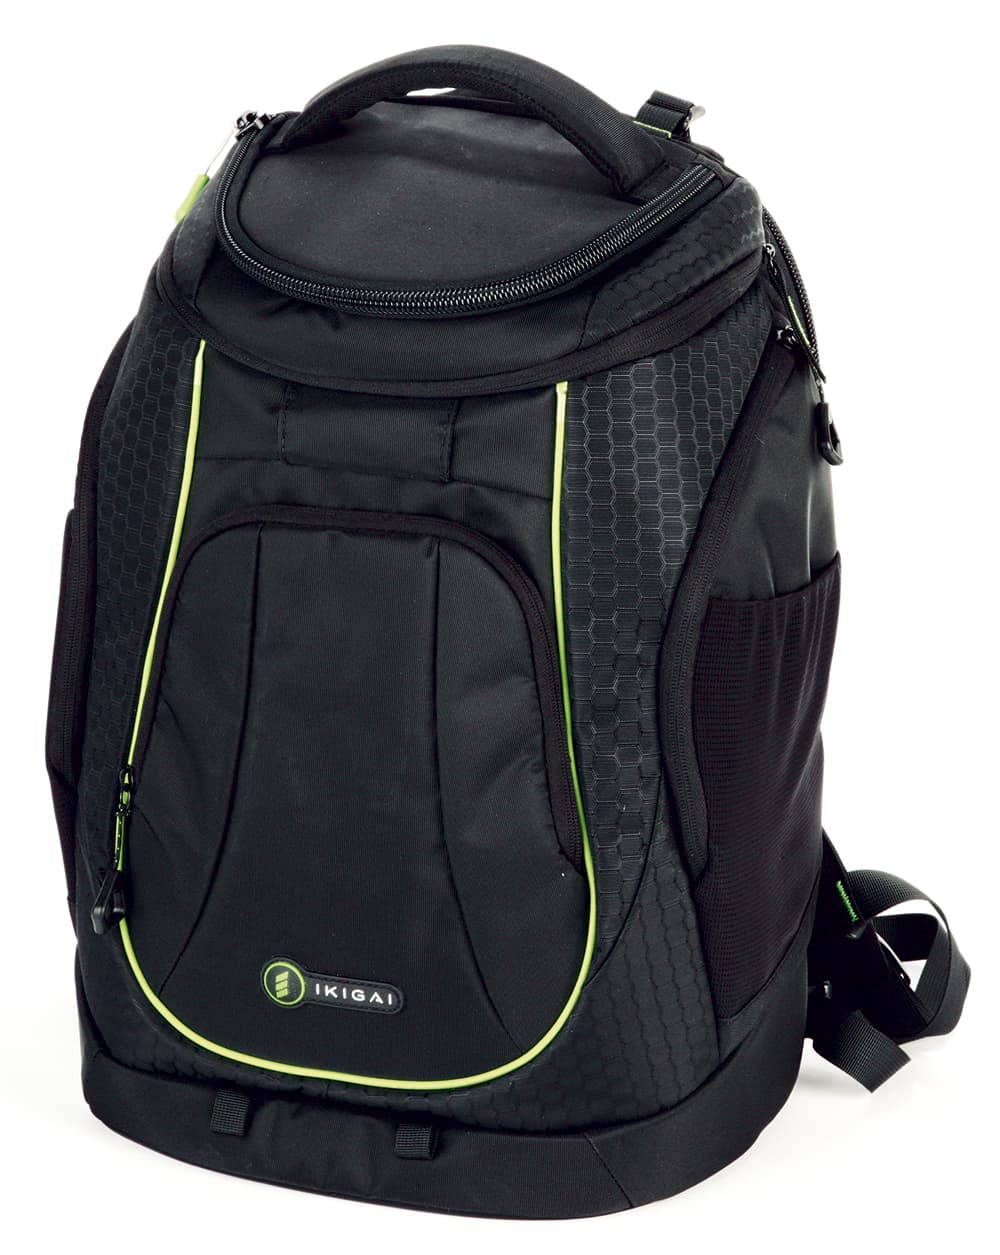 Ikigai-backpack